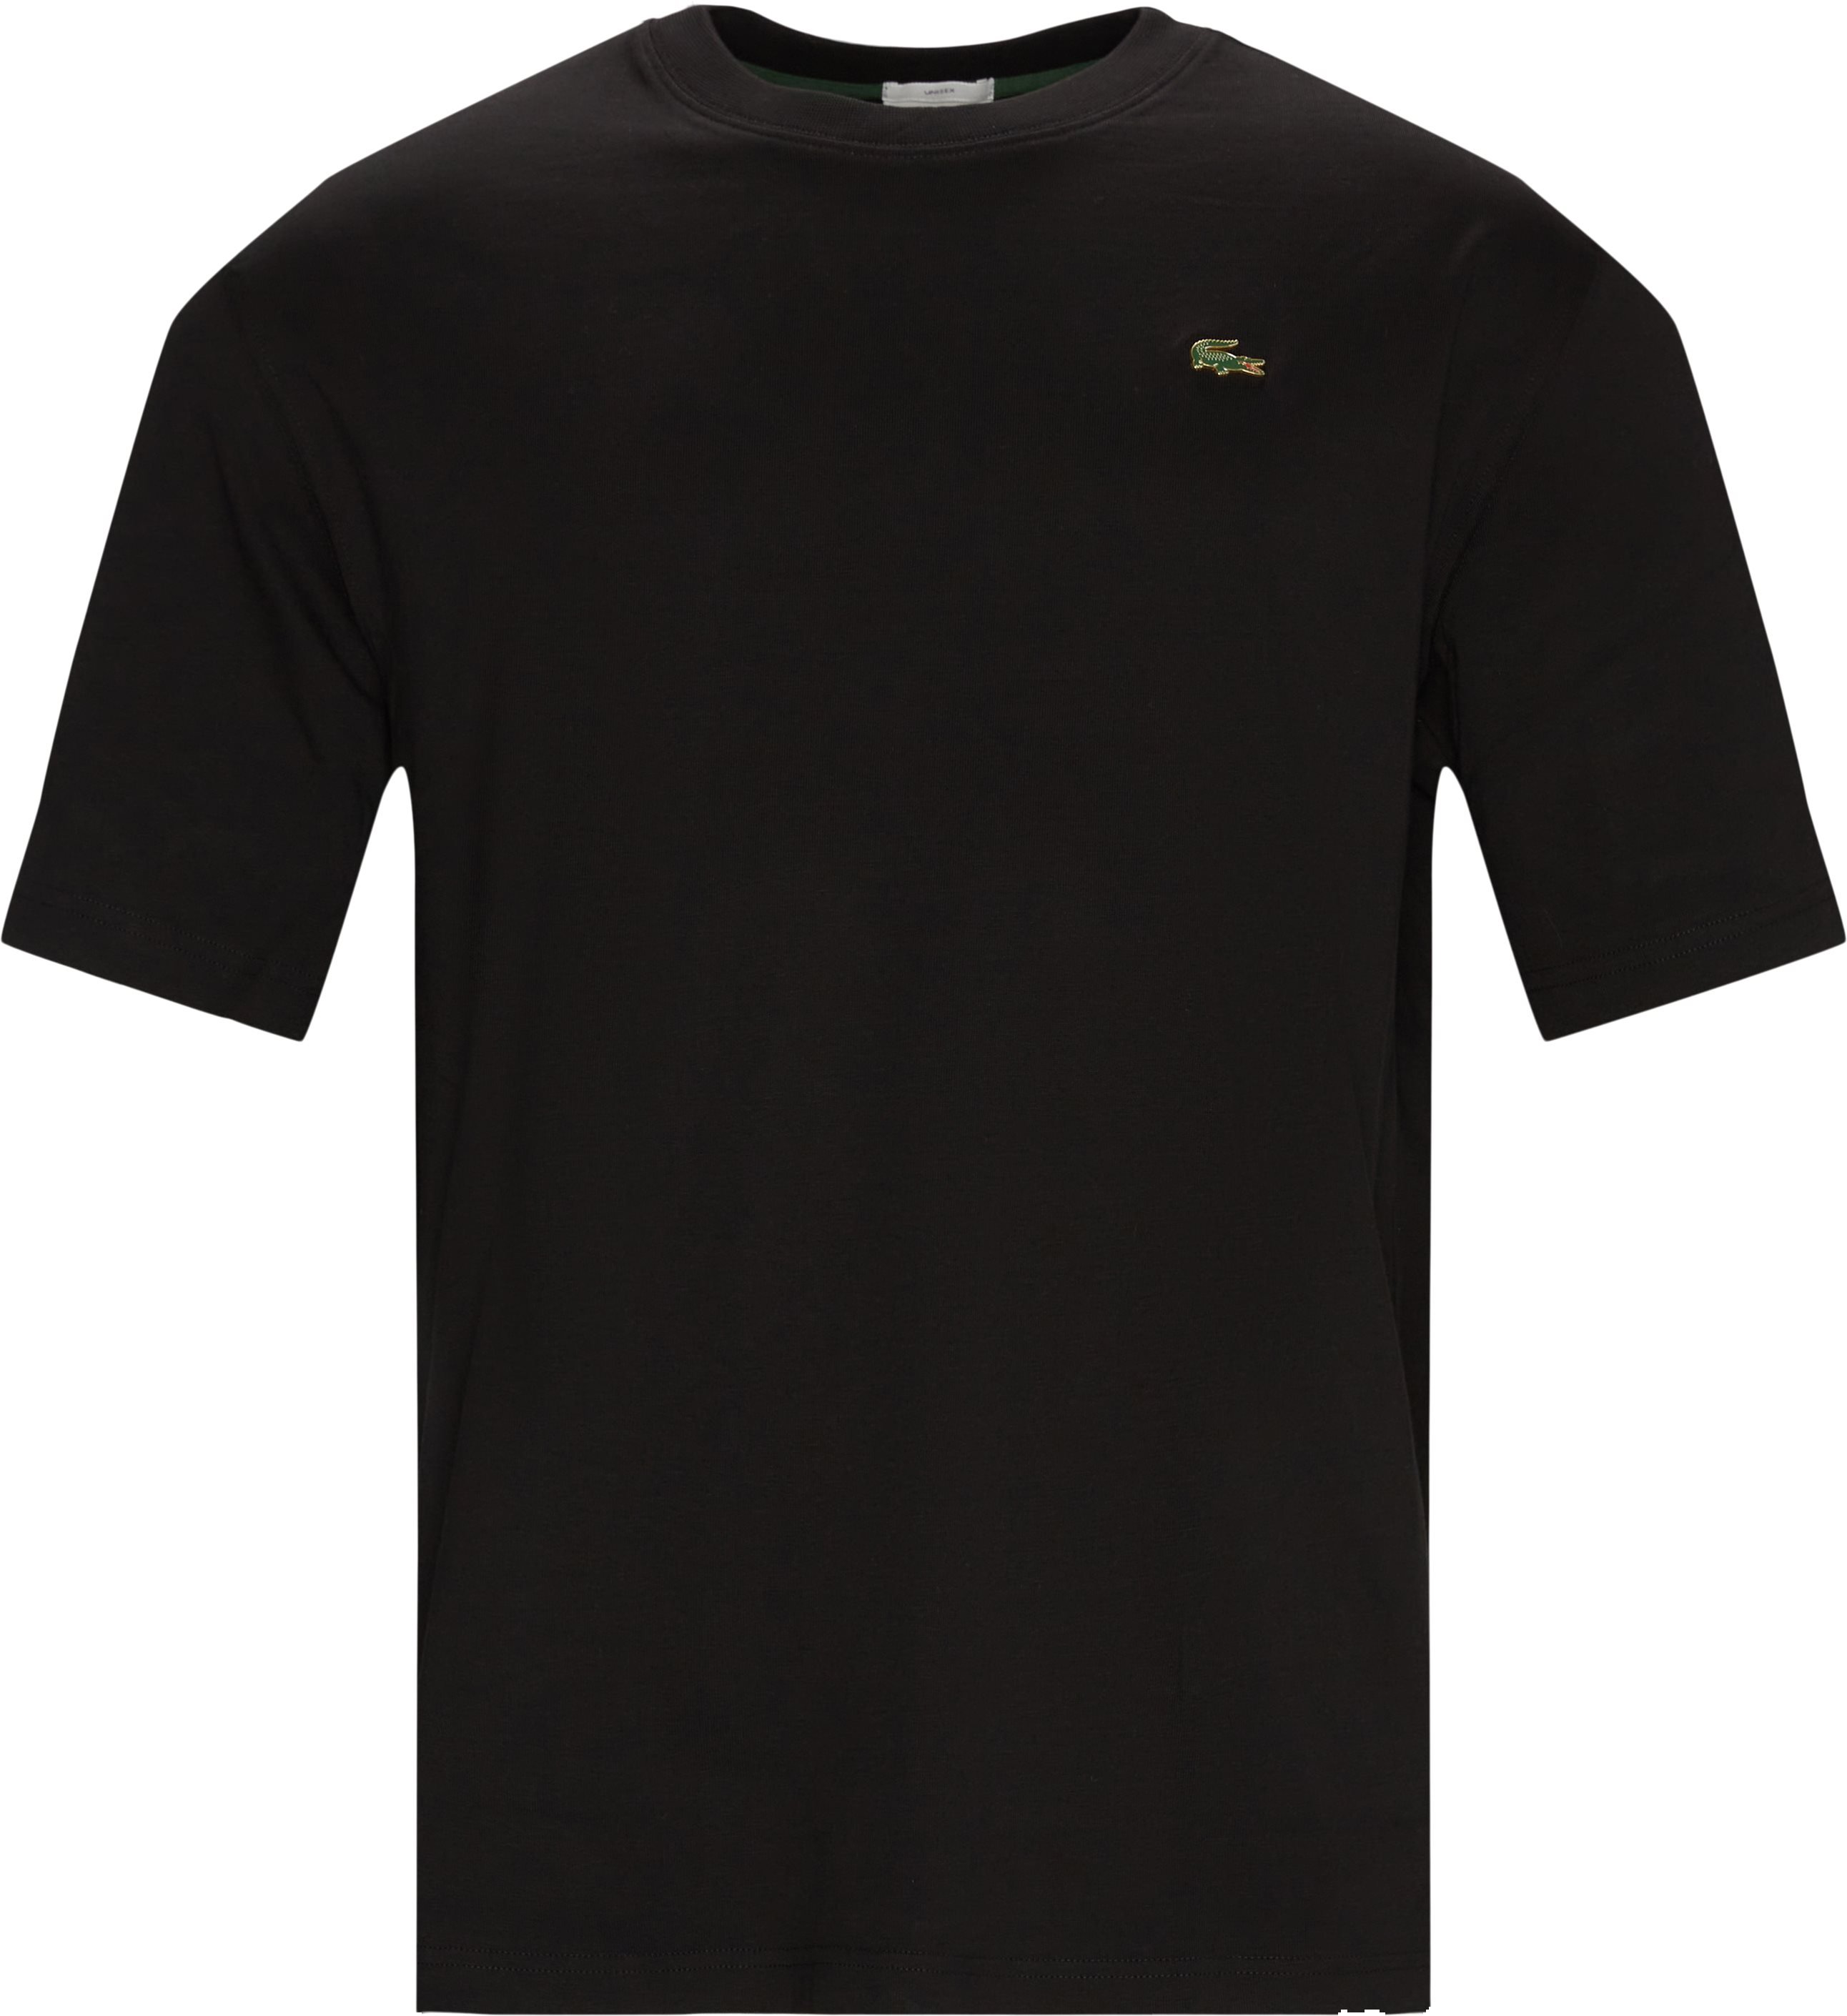 Th9162 Tee - T-shirts - Regular fit - Black